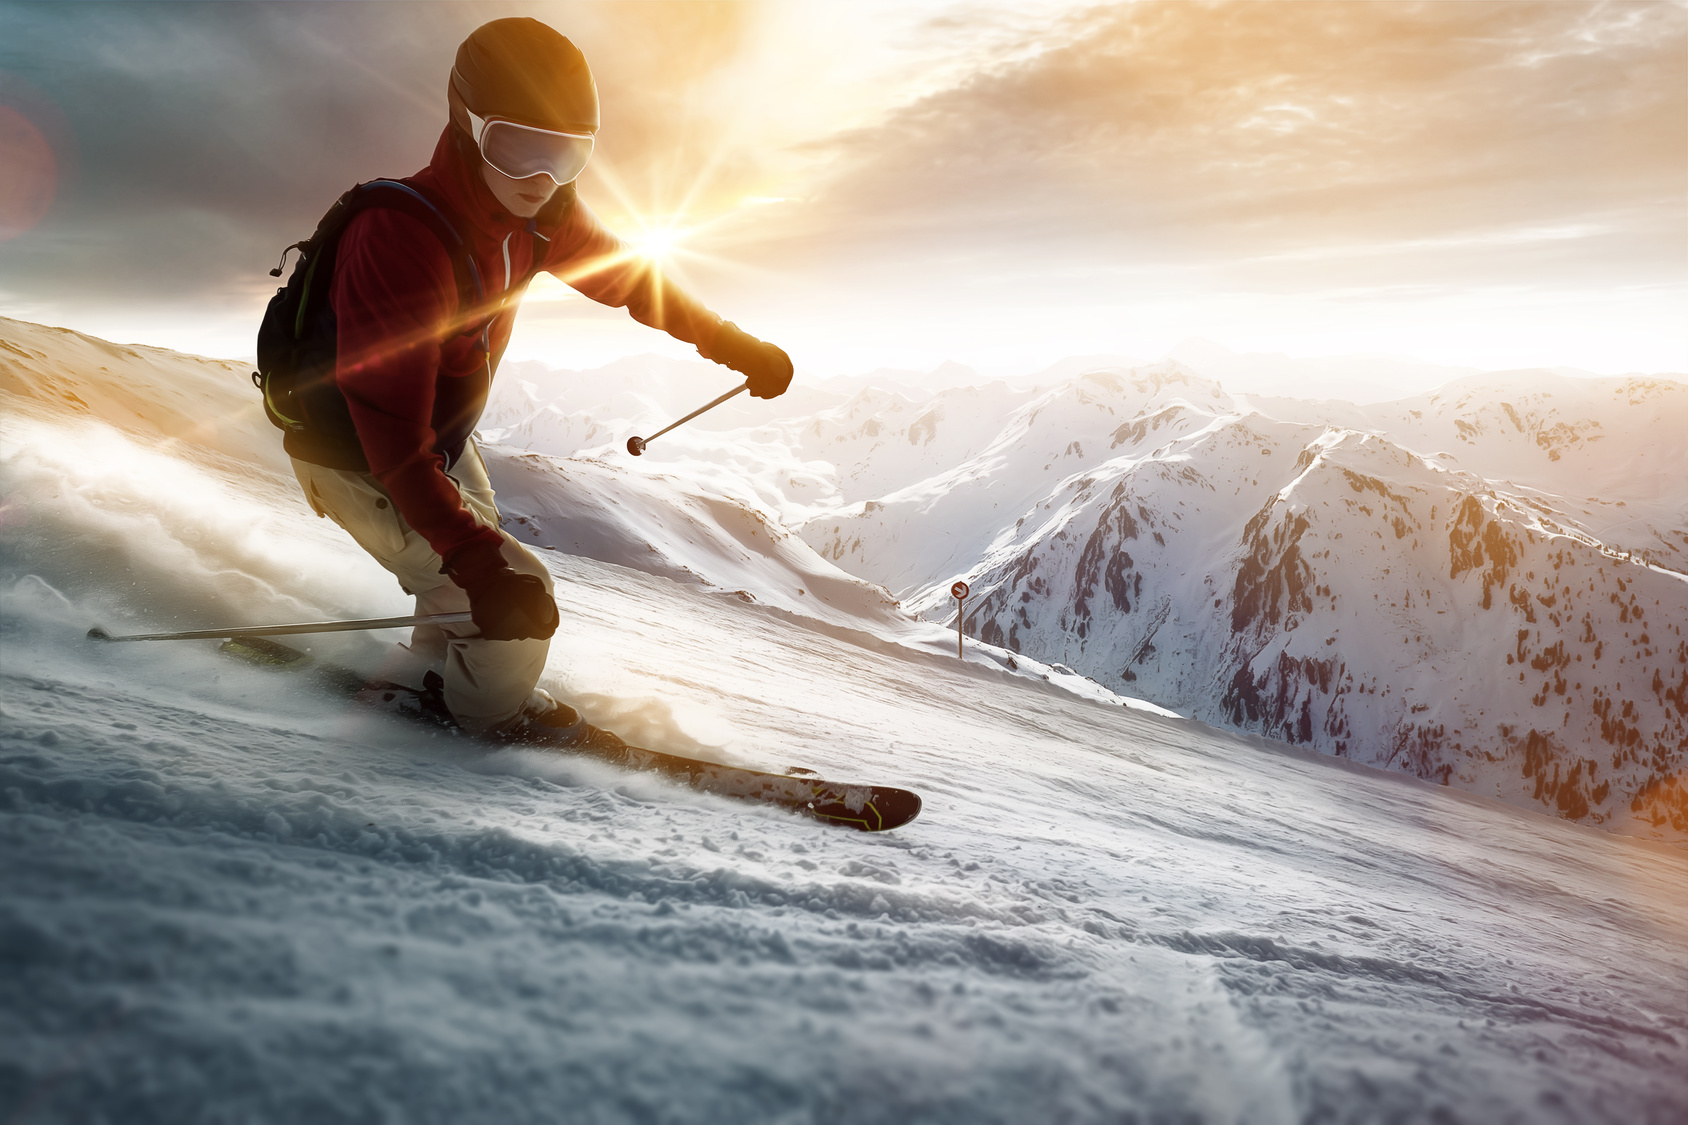 Genou : une articulation à risque pour la pratique du ski